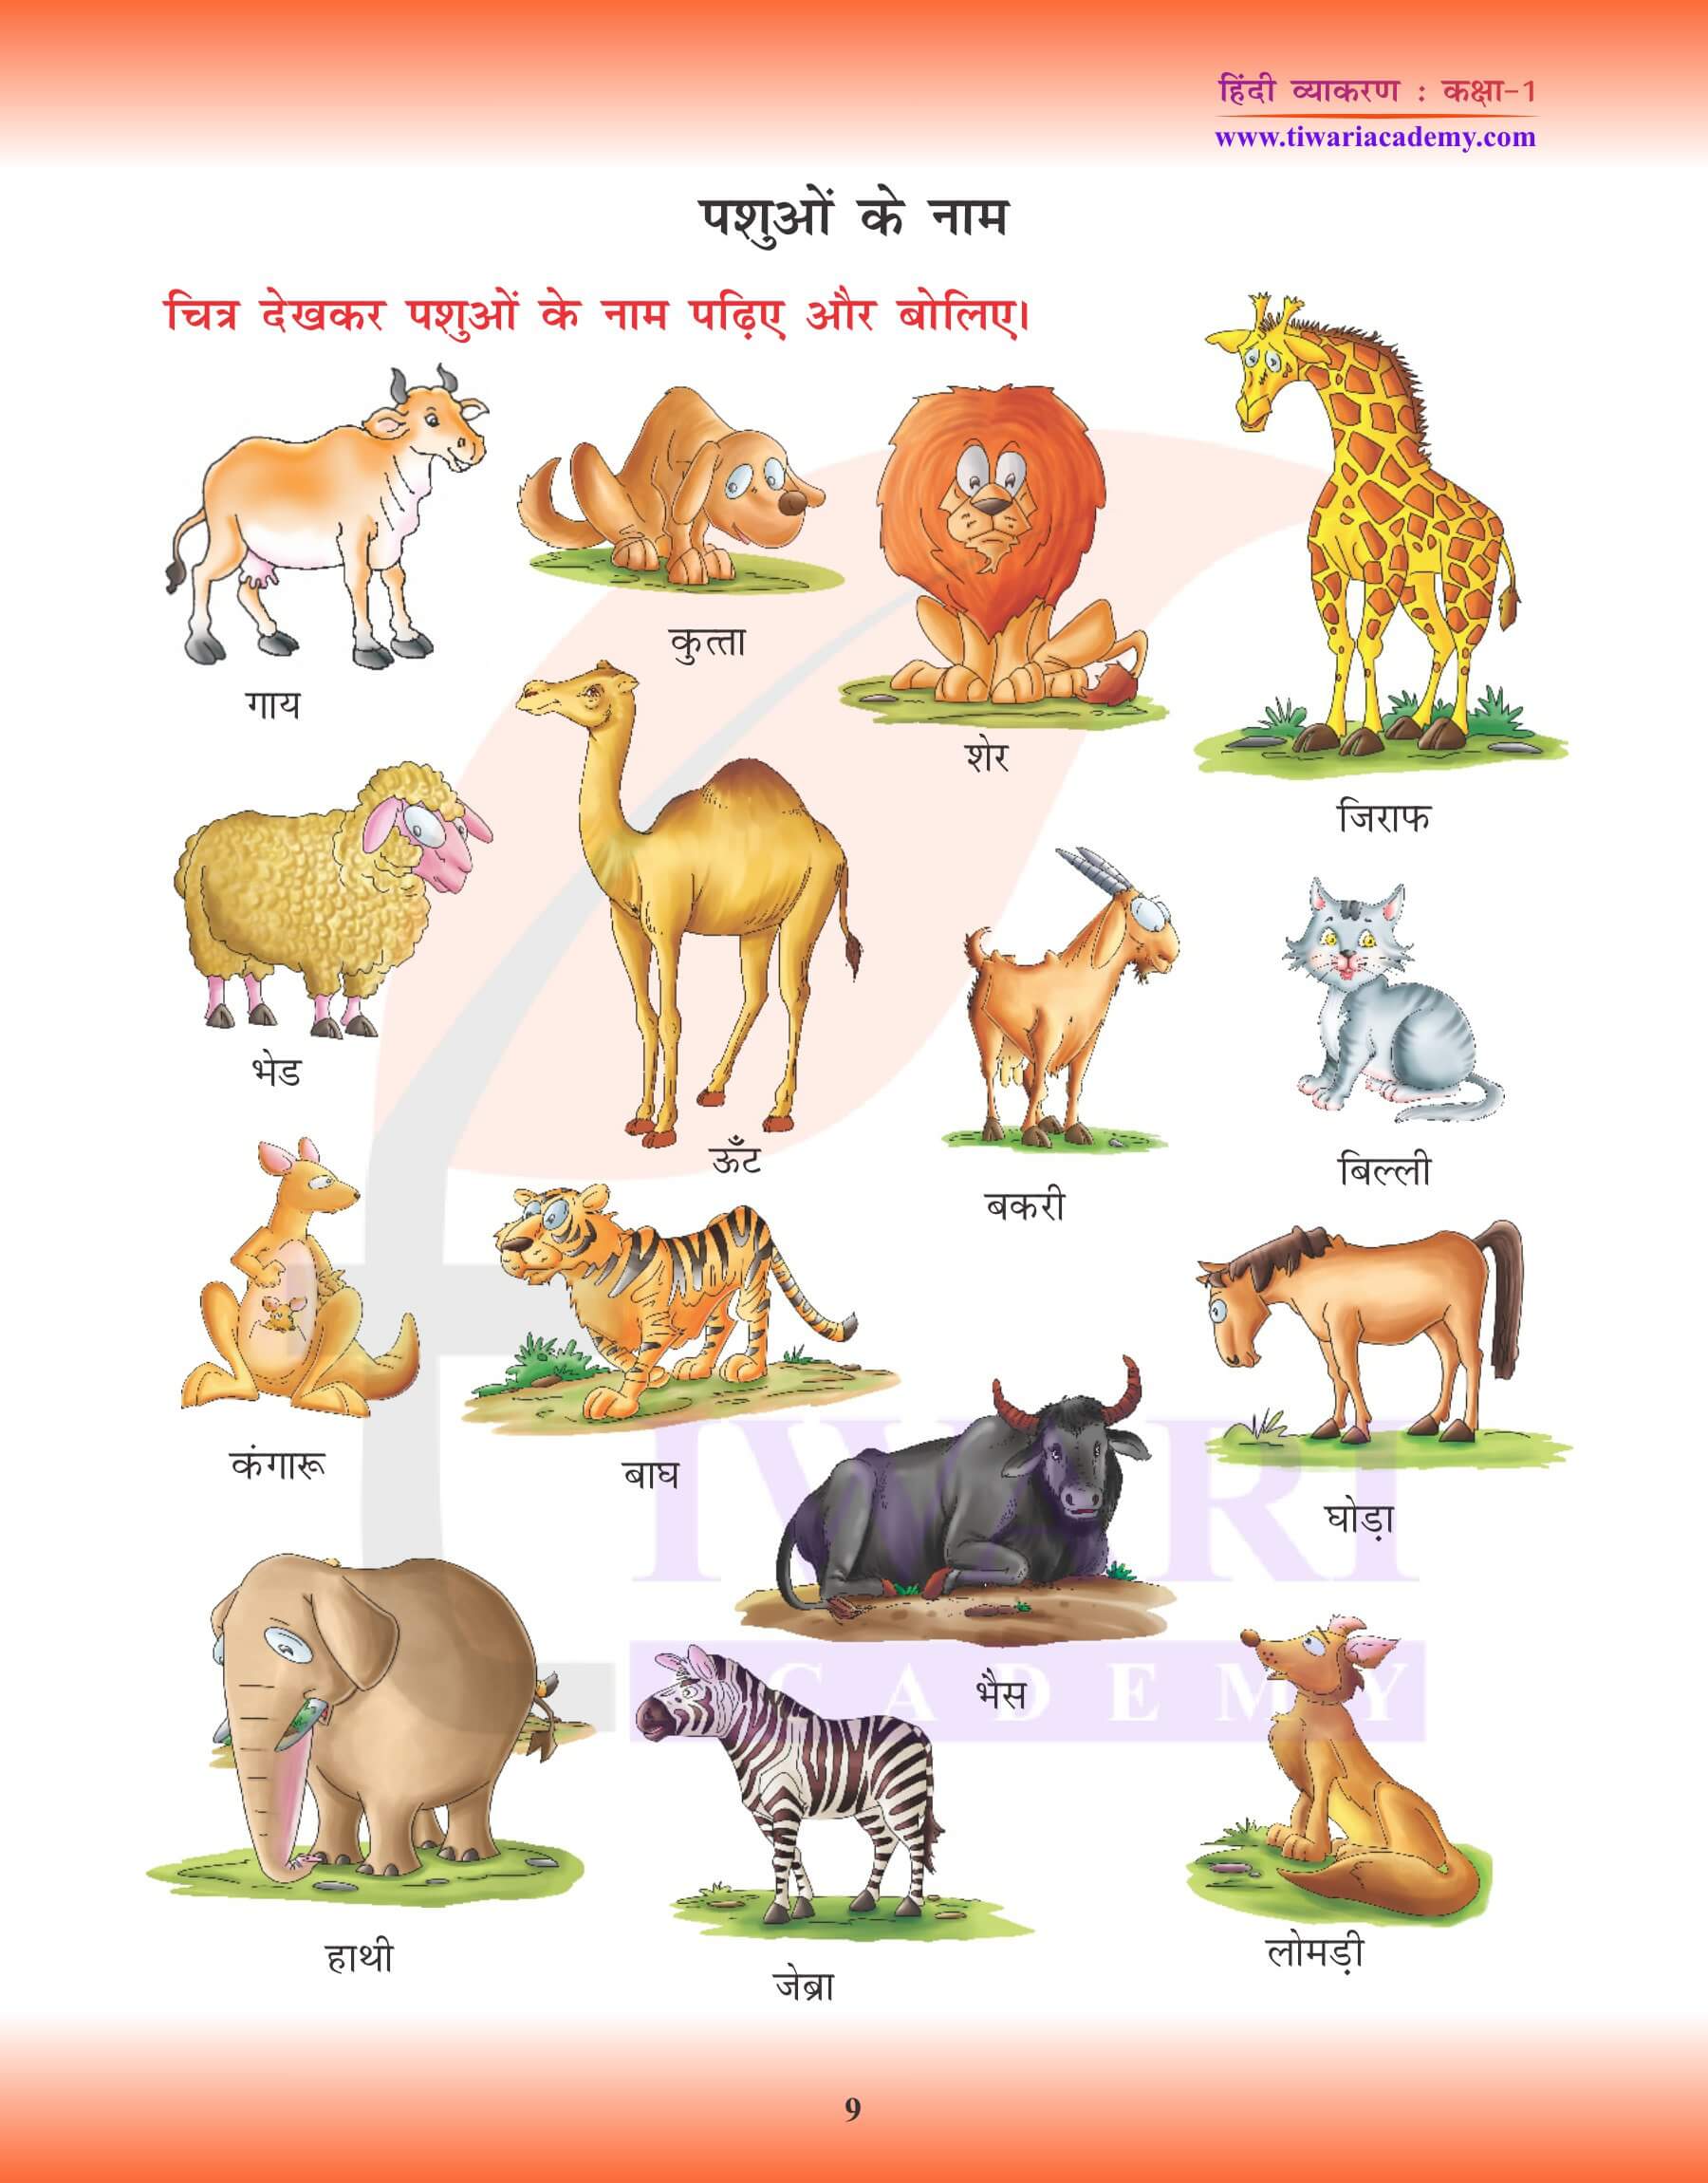 कक्षा 1 के लिए हिंदी व्याकरण में संज्ञा के उदाहरण